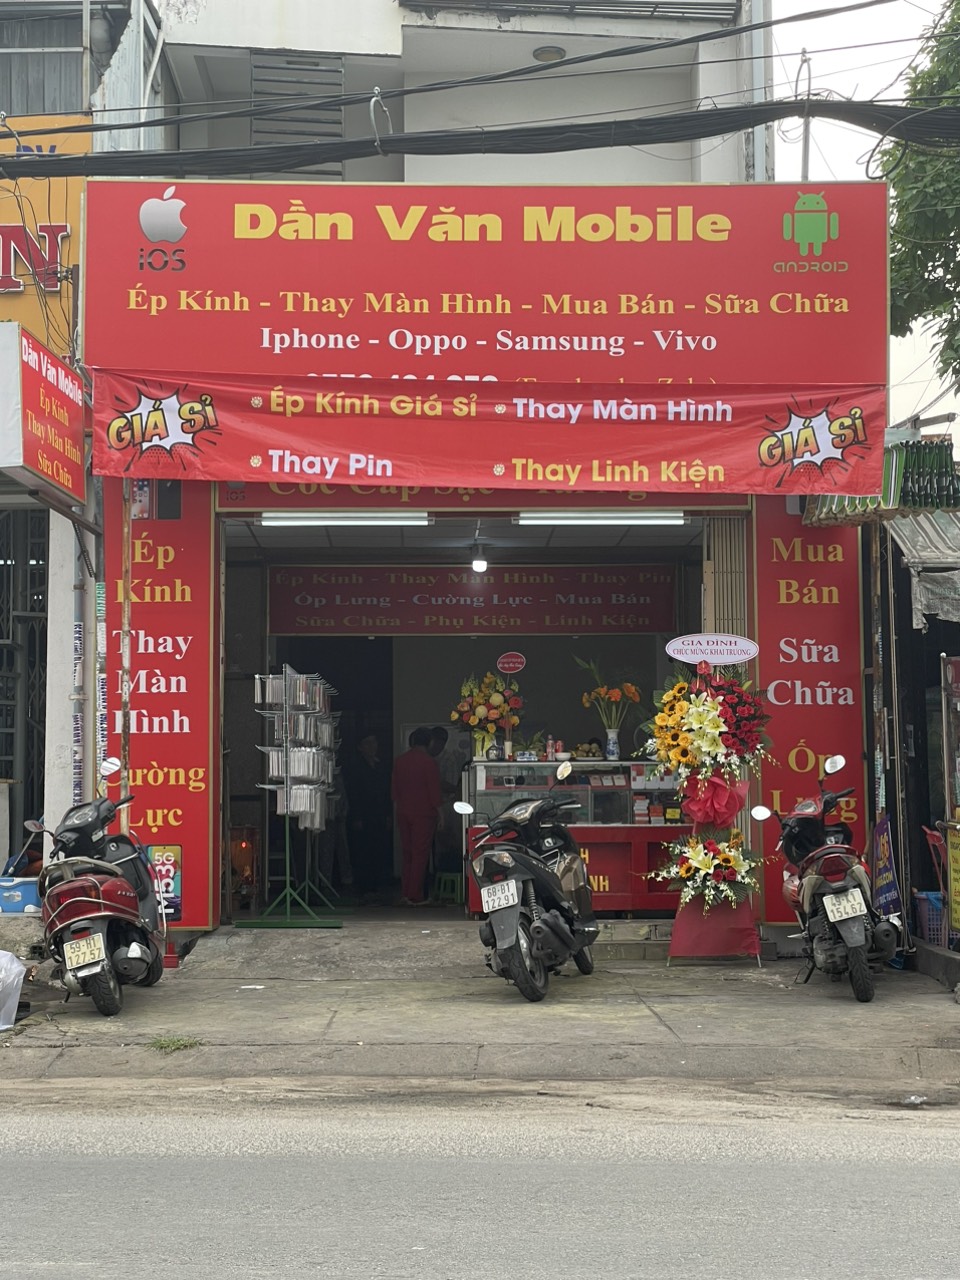 DẦN VĂN MOBILE: Hành trình khởi nghiệp thành công của anh Dần Văn Anh trong lĩnh vực sửa chữa điện thoại di động